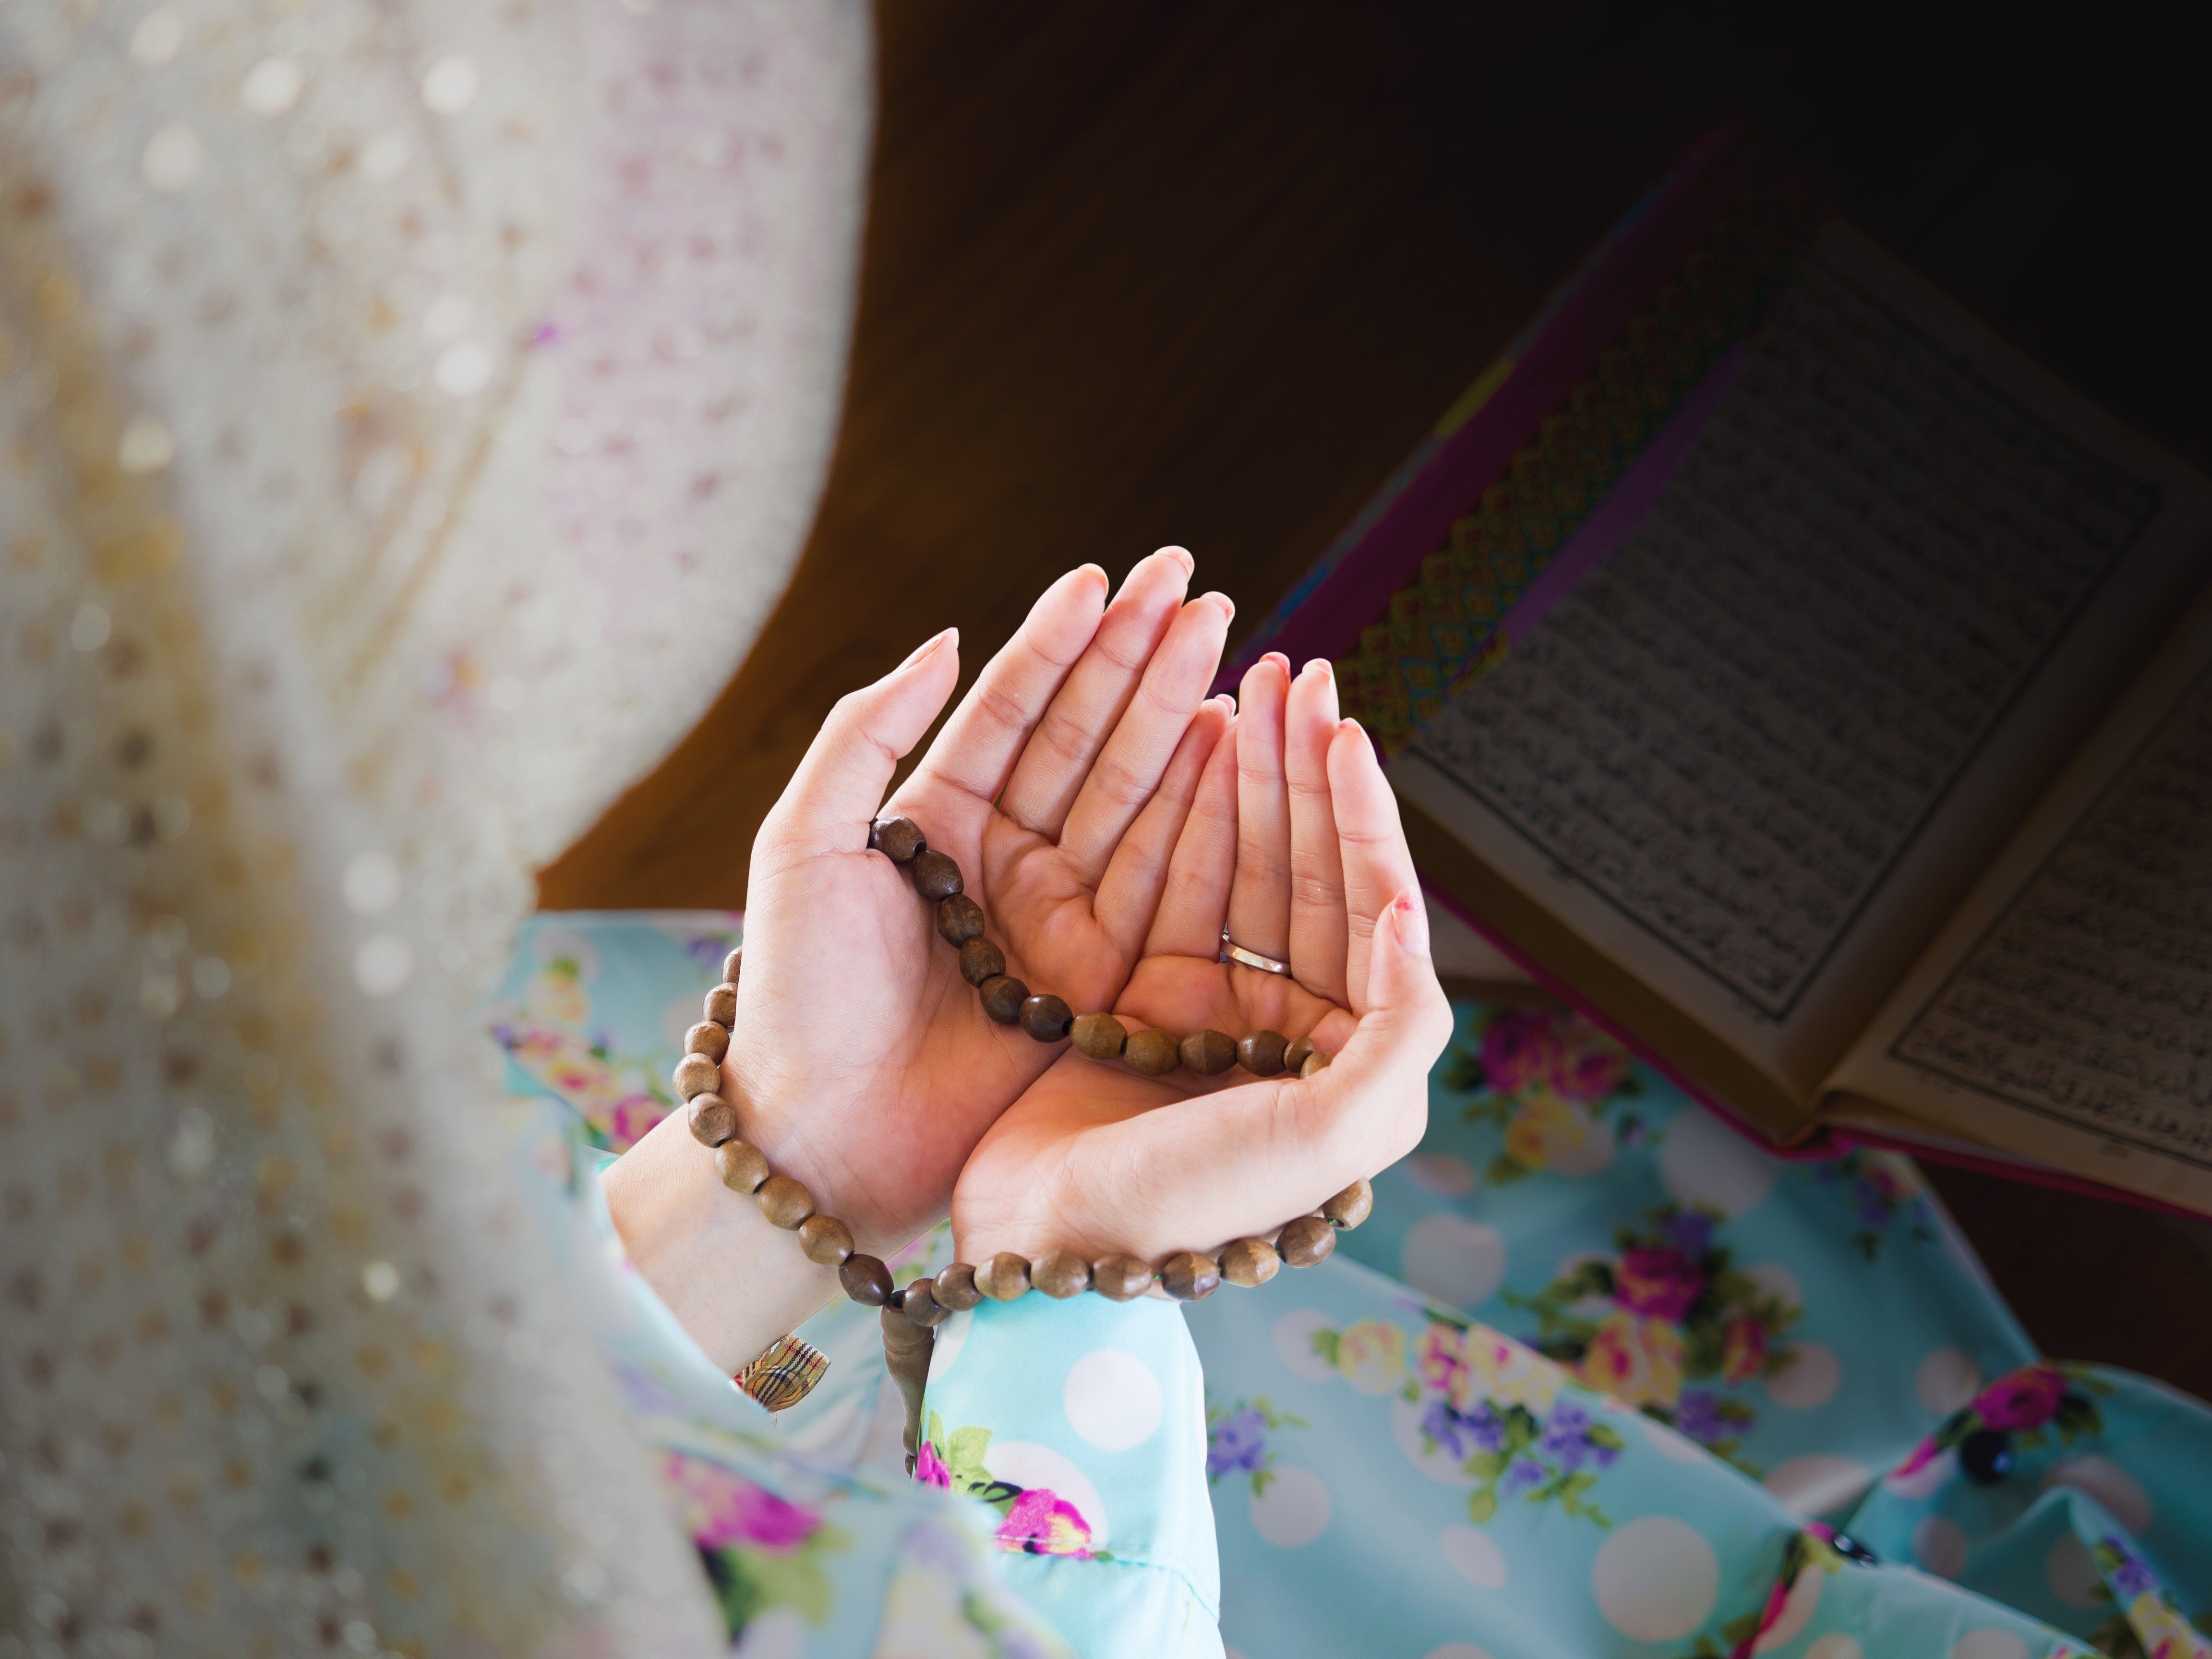 Молитва мусульманских женщин